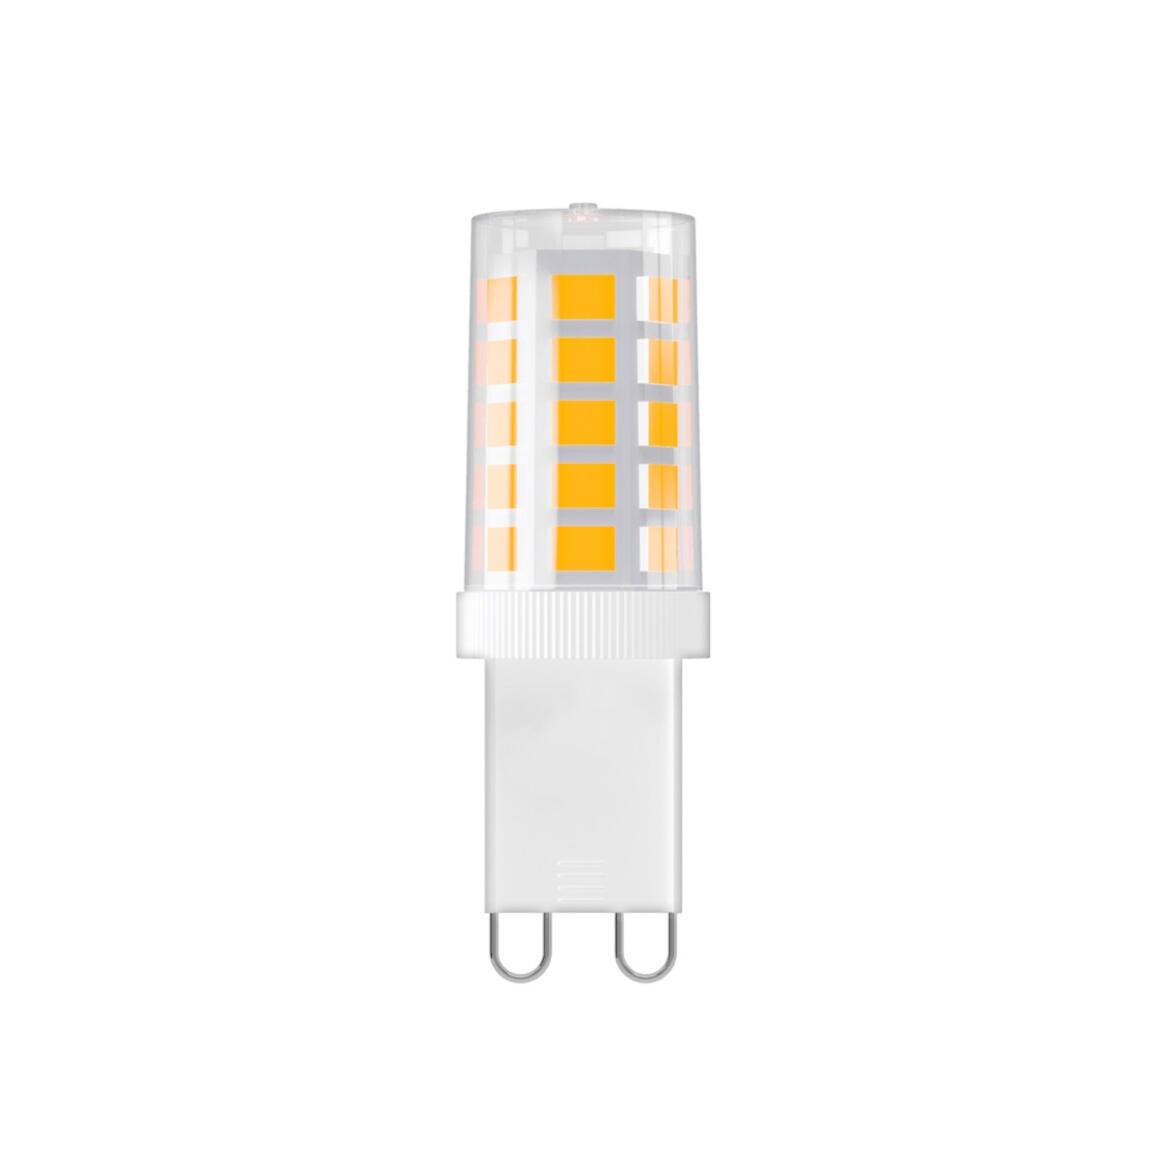 G9 Ampoule LED à brûleur en verre à intensité variable 3W 3000k 320lm 4.9cm main product image